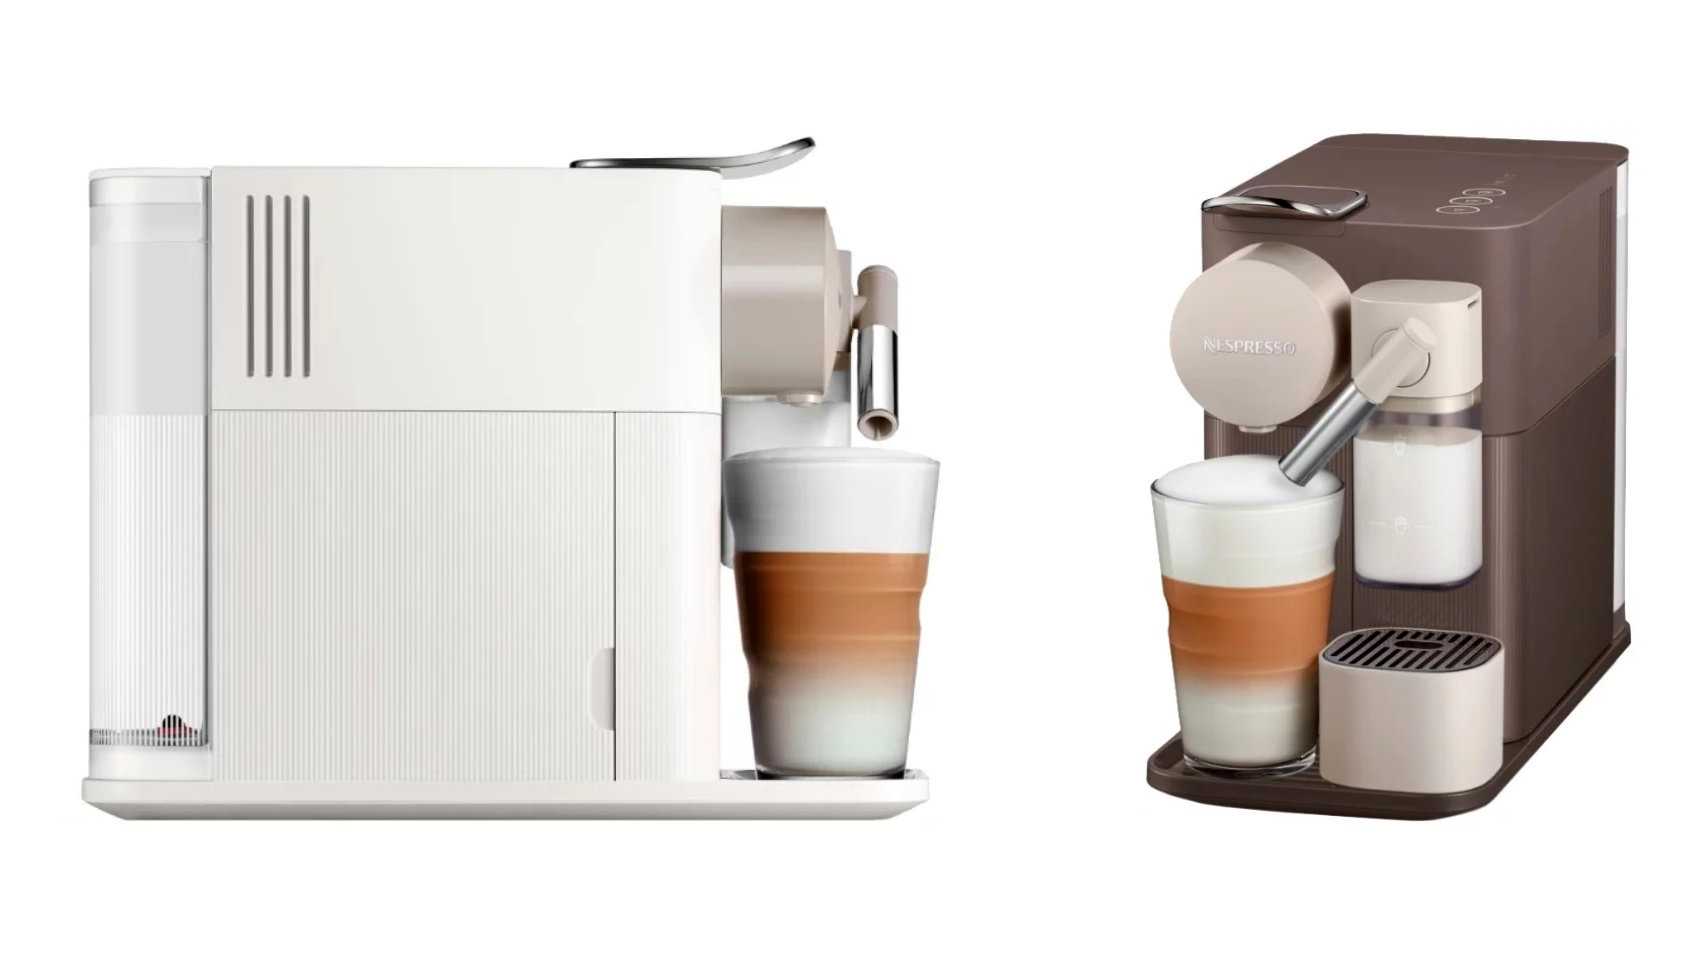 Как выбрать лучшую капсульную кофемашину: виды, критерии подбора, обзор 11 популярных моделей, их плюсы и минусы